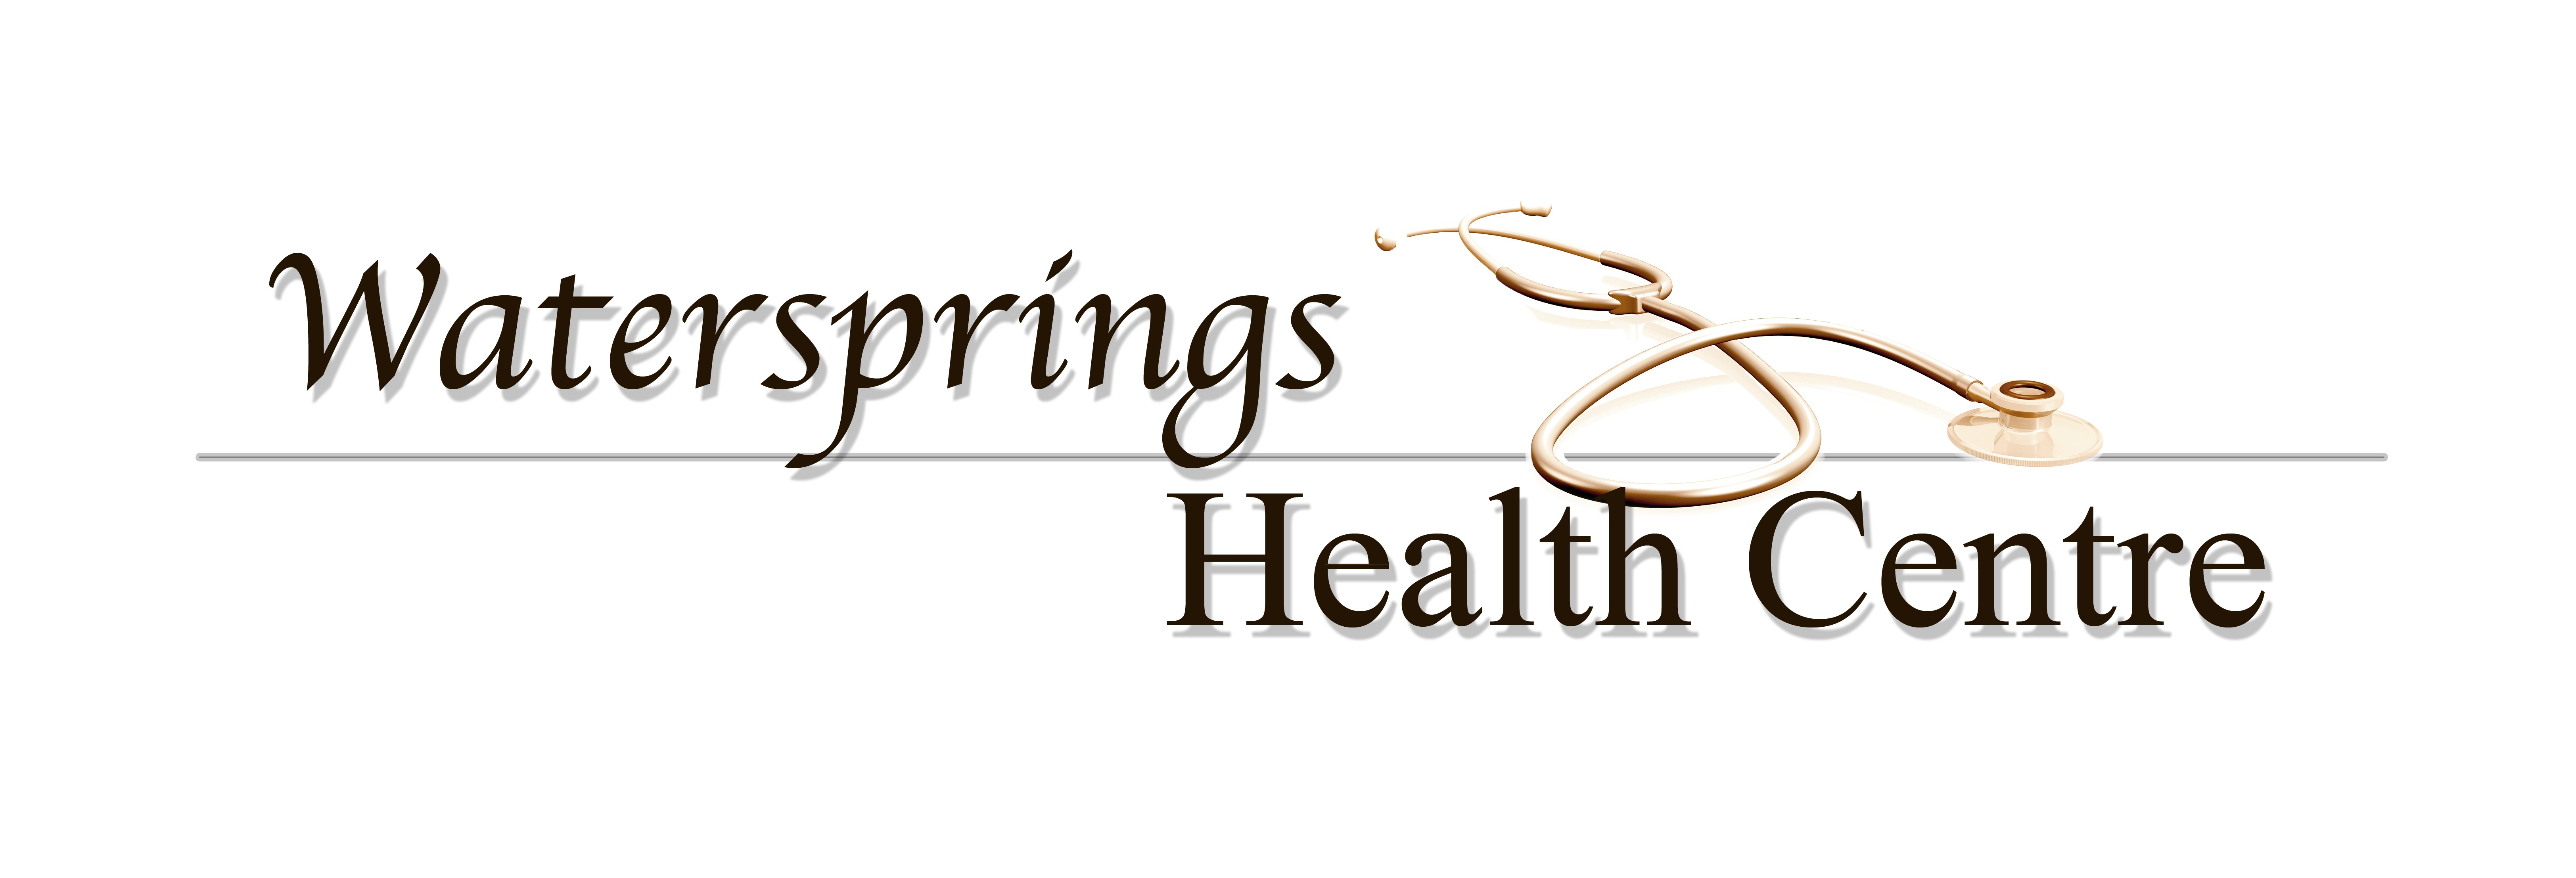 Watersprings Health Centre Logo